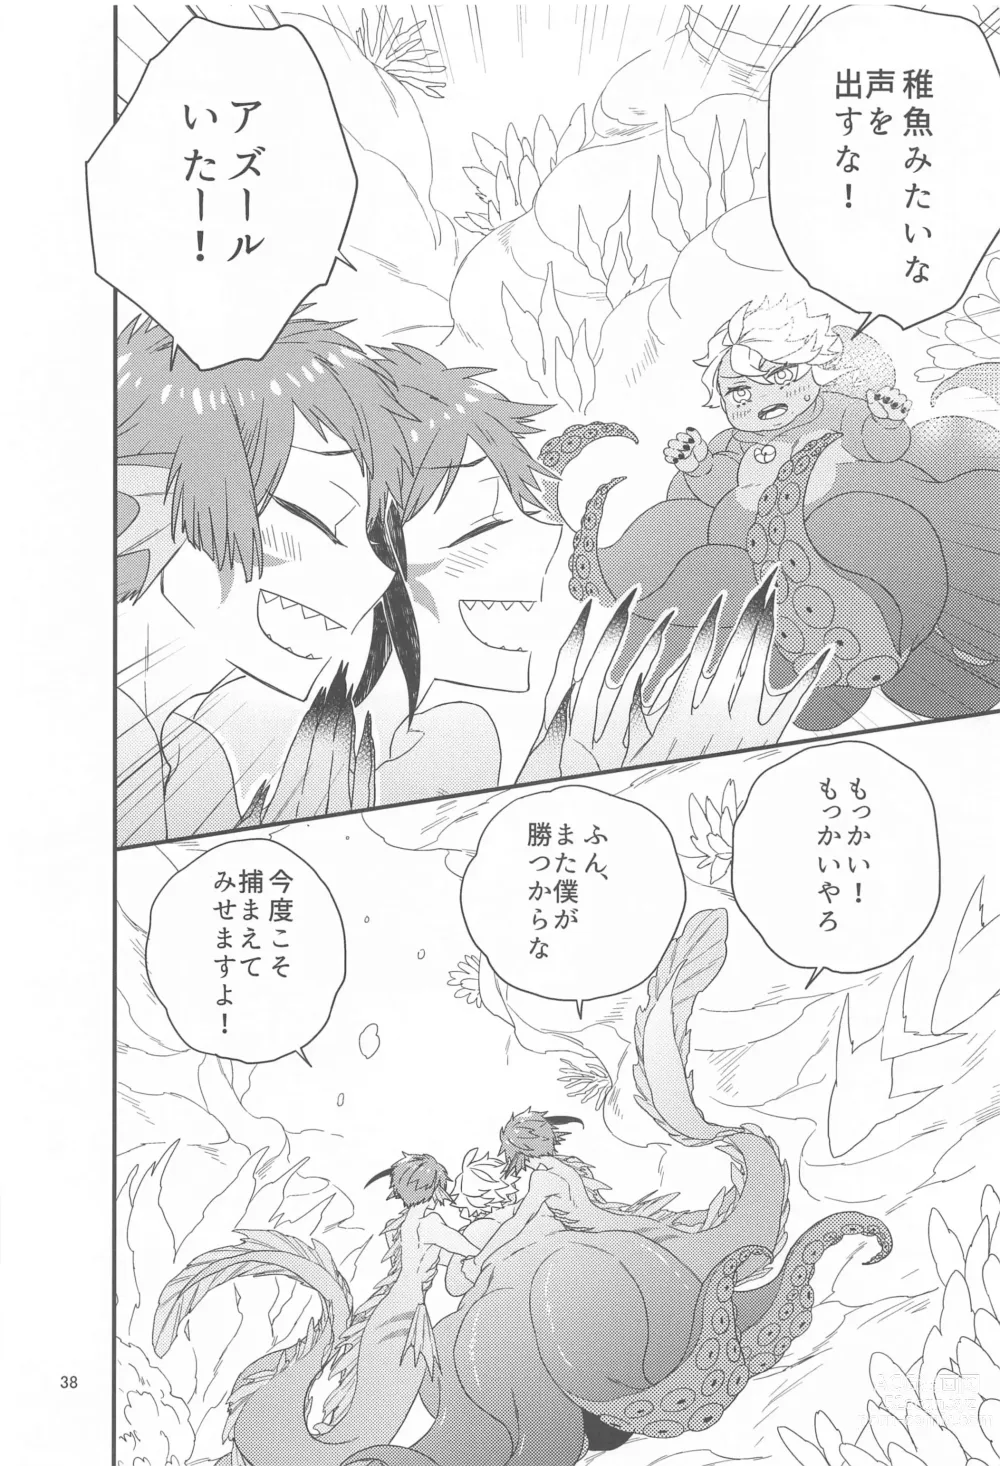 Page 37 of doujinshi Please Don’t Run Away!